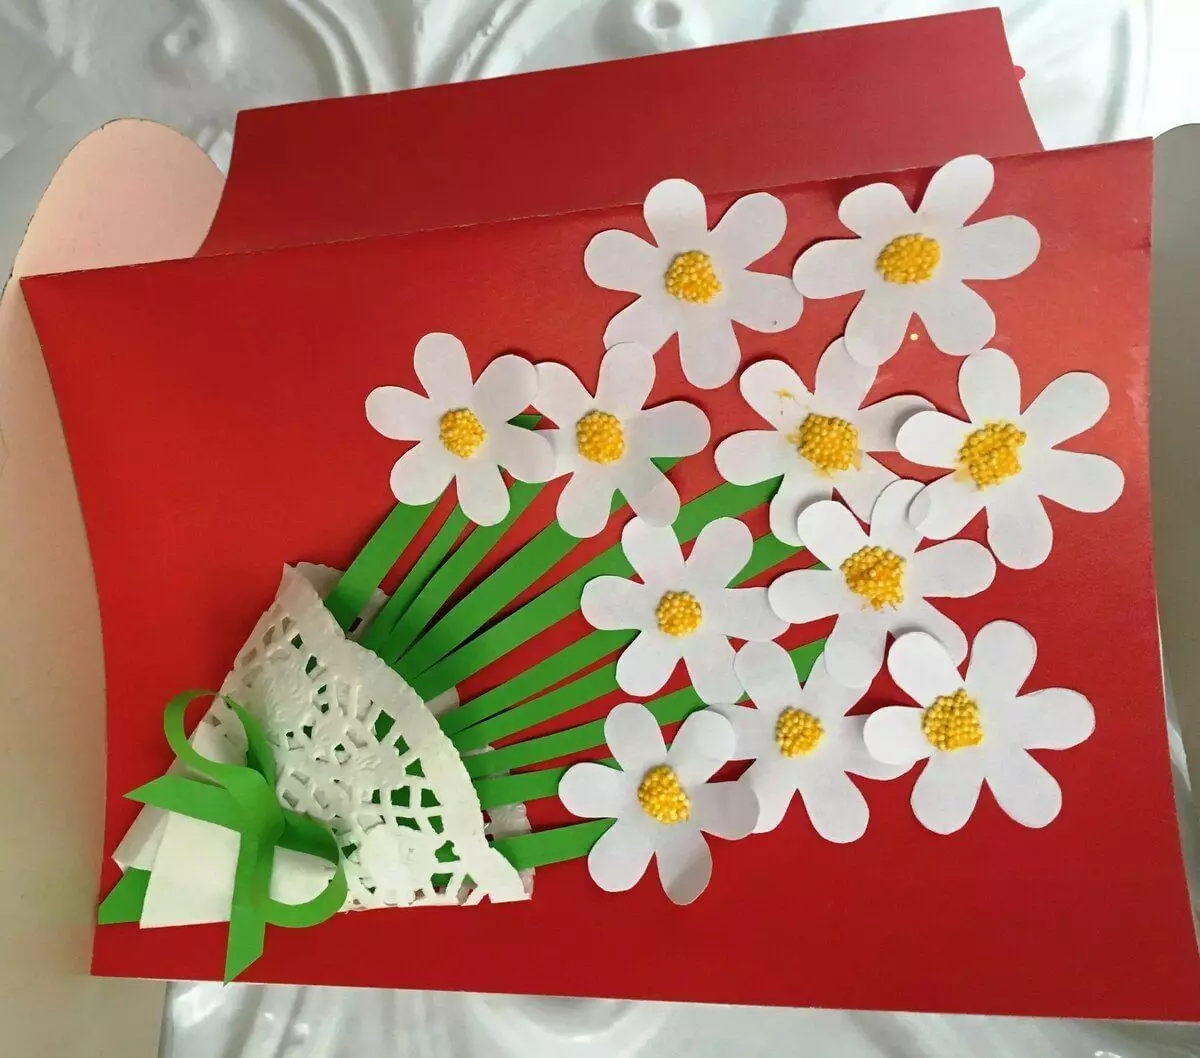 کاغذ سے پوسٹ کارڈ آپ کے اپنے ہاتھوں سے: چھتری کے ساتھ سالگرہ کا کارڈ کیسے بنانا ہے؟ نالے ہوئے کاغذ، ایک دل اور دوسروں کے ساتھ کارڈ 26462_3